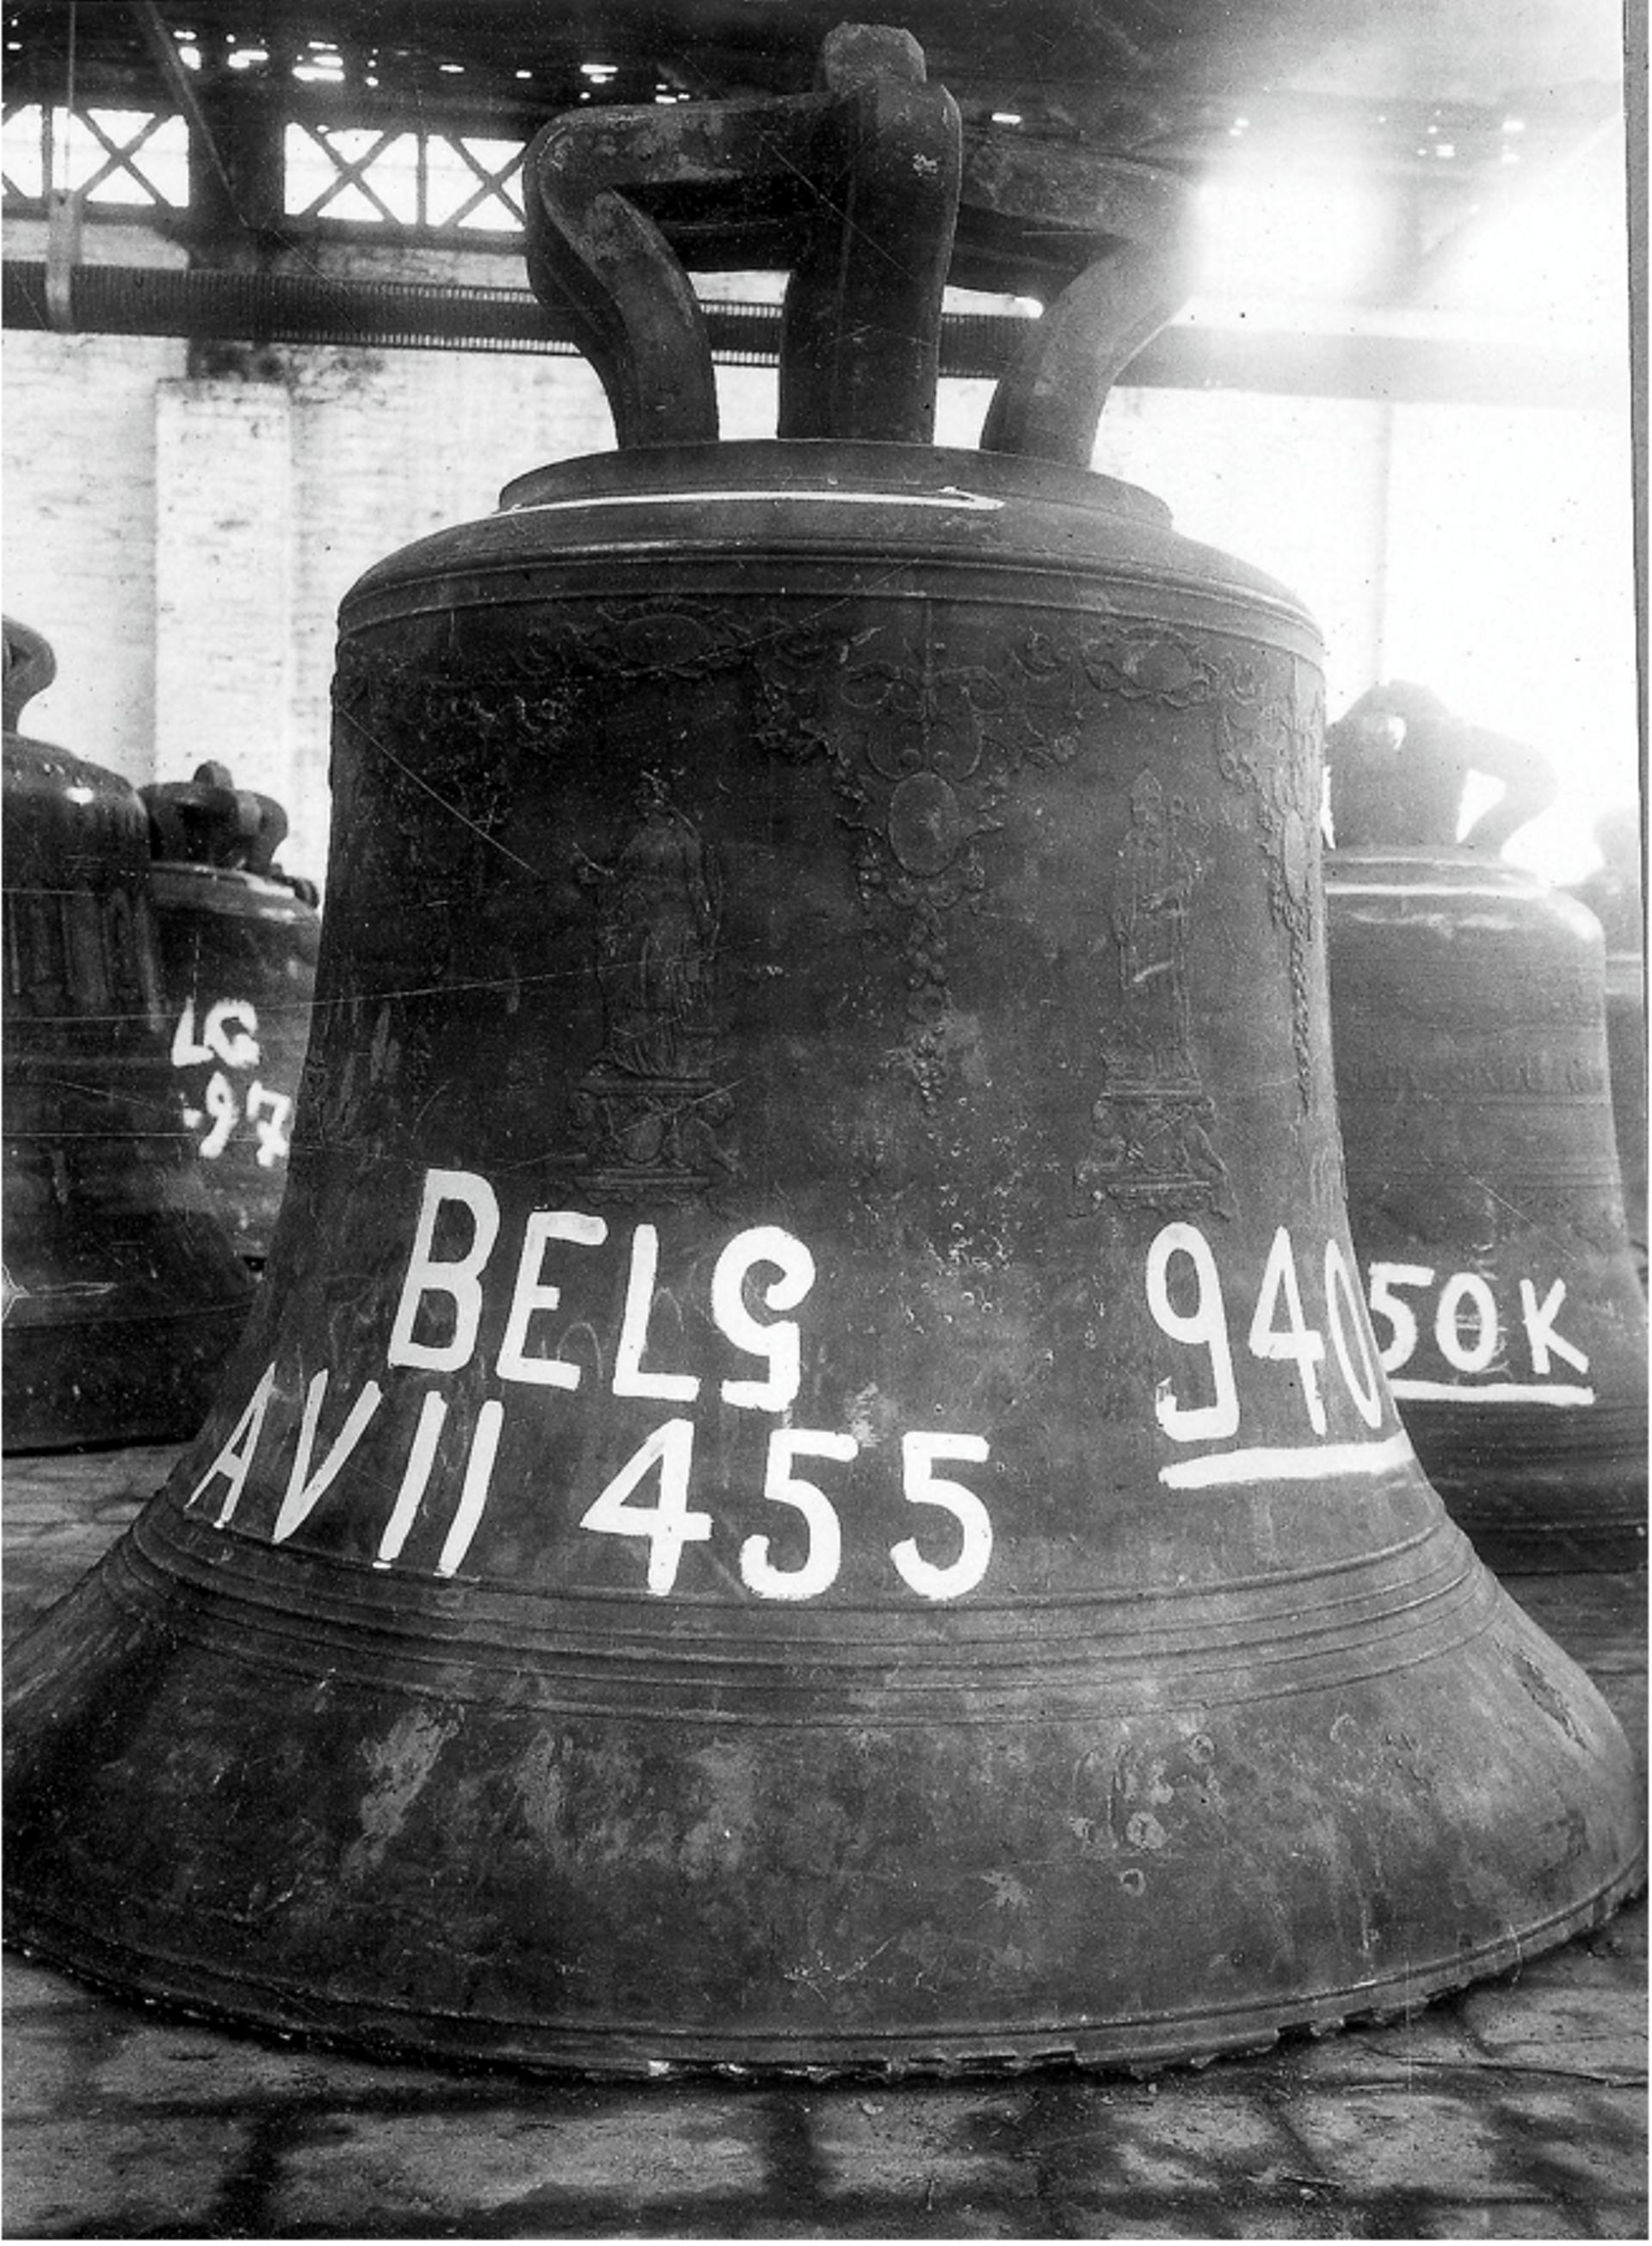 L’une des cloches de l’église Saint-Hubert à Durnal, bel exemple de classification : catégorie A, VII pour province de Namur, 455 pour le numéro propre à la cloche et son poids, 940 kg.